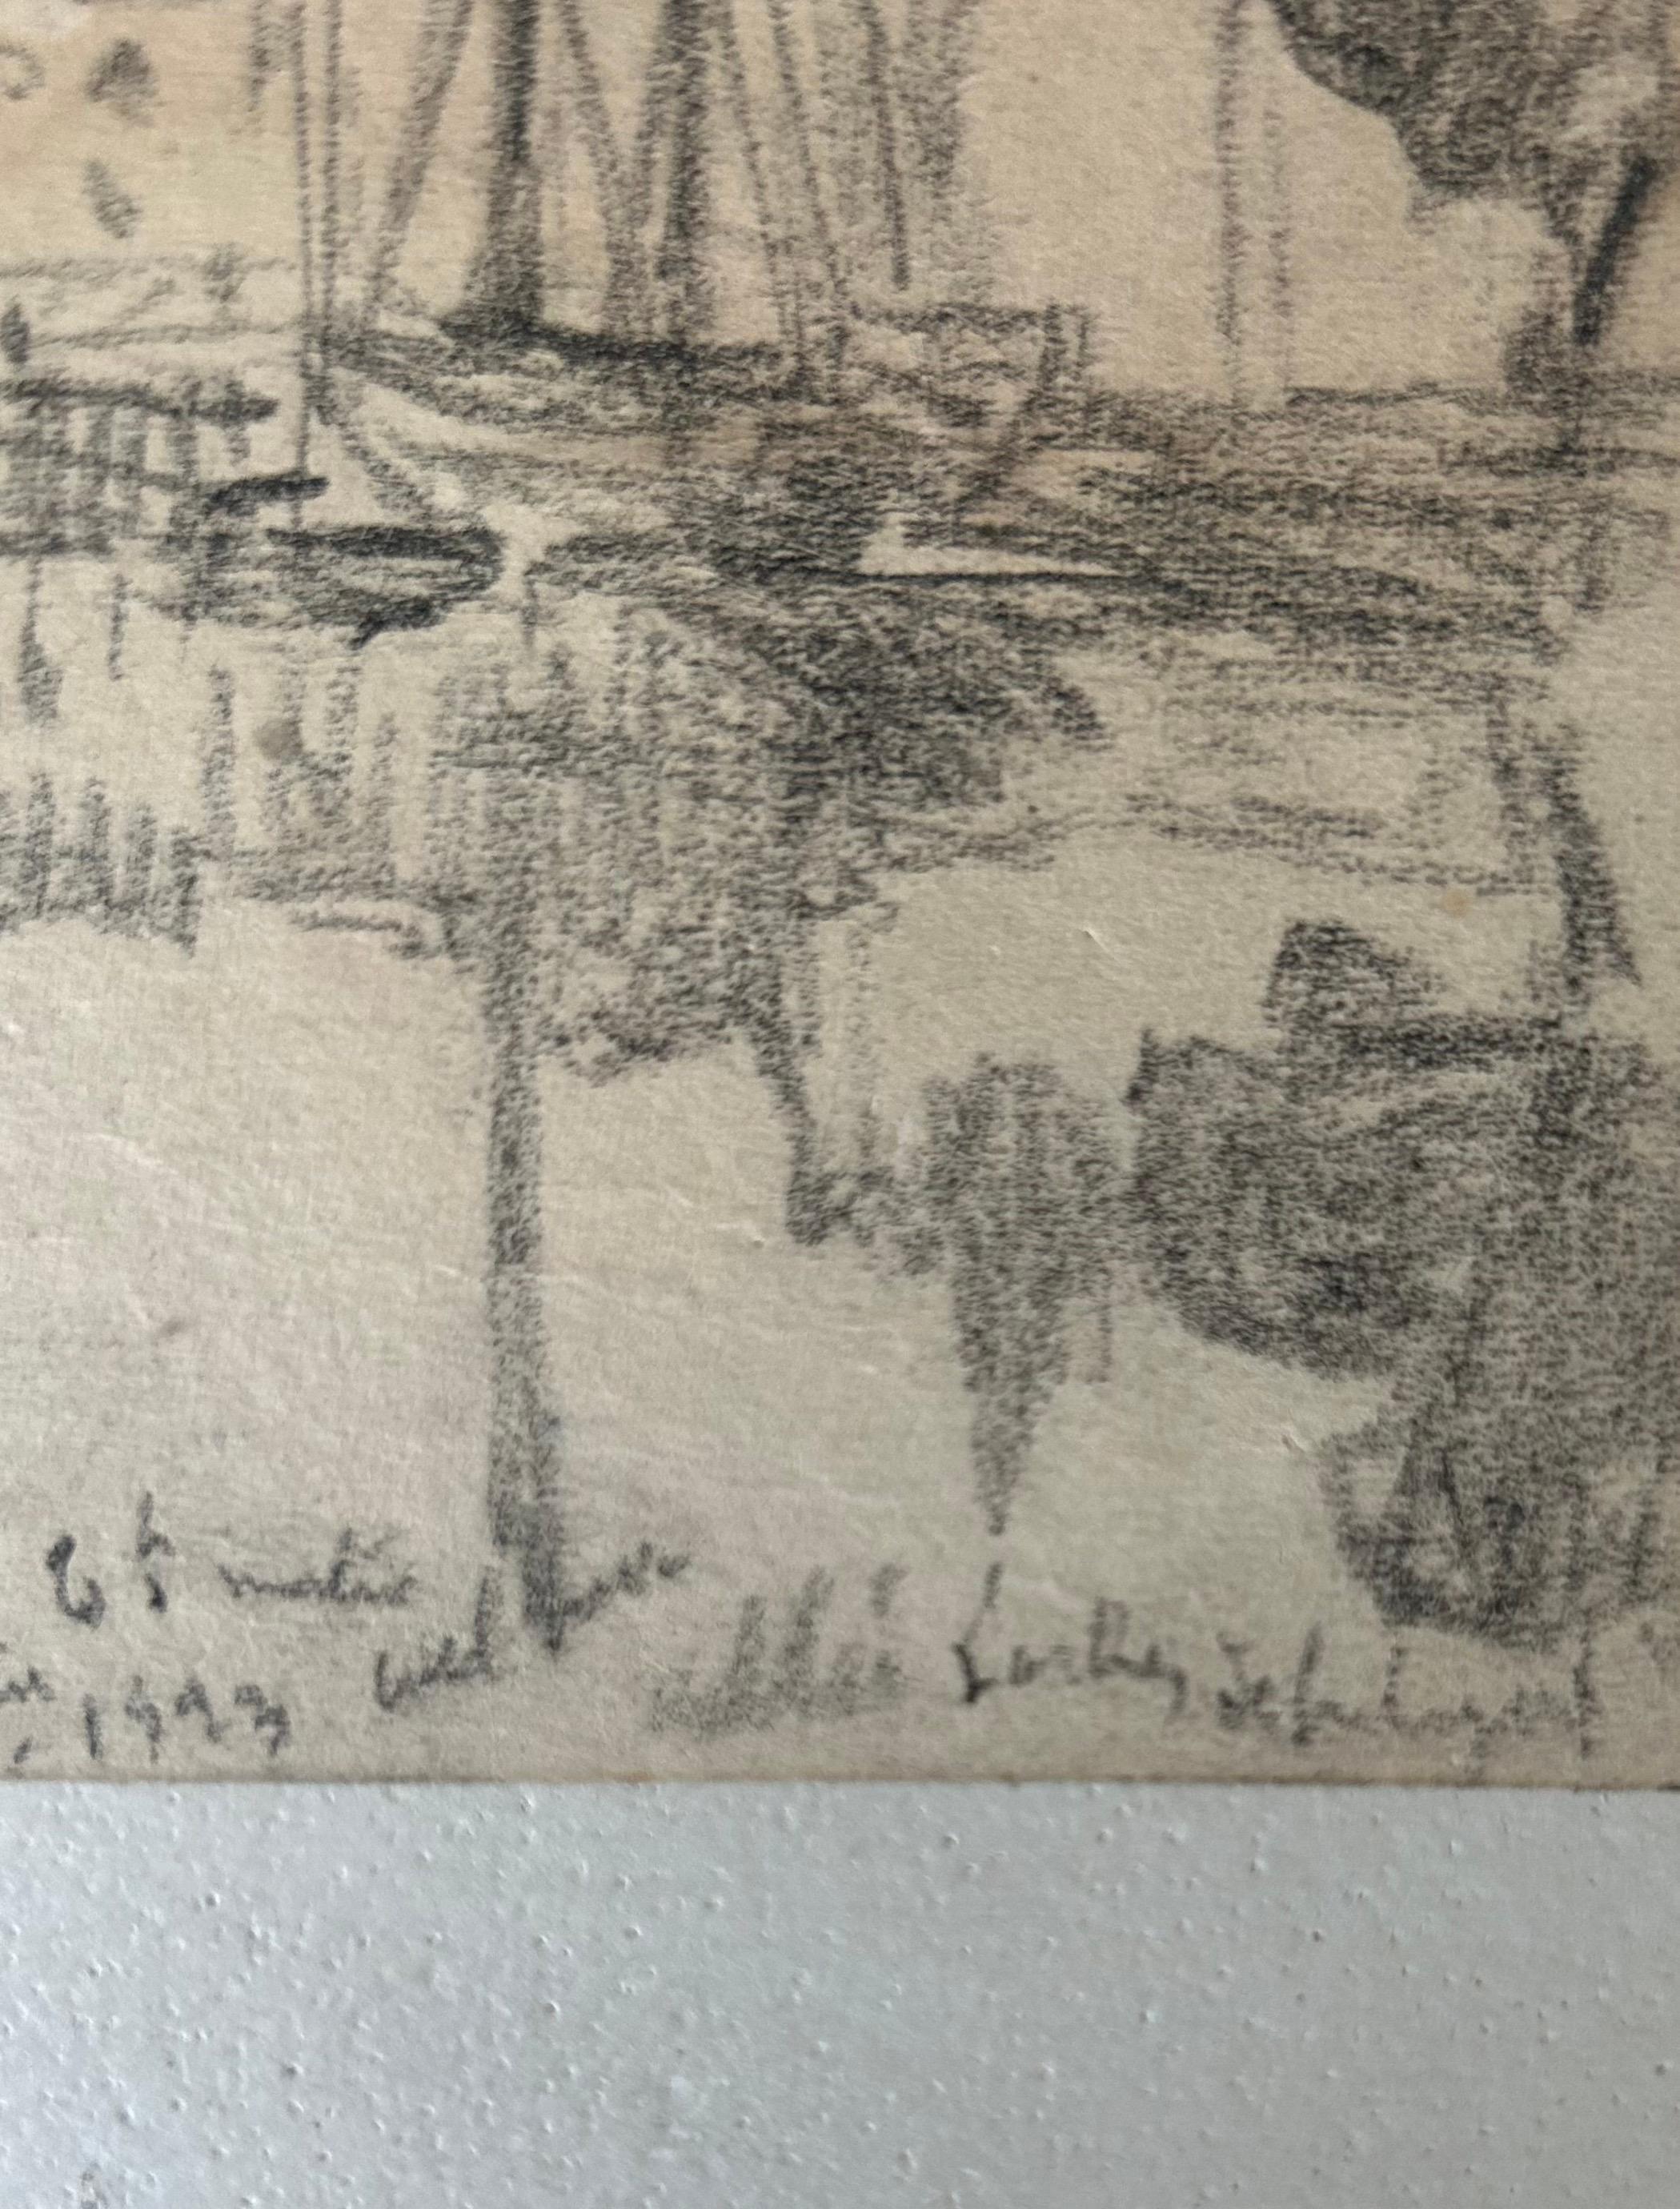 Dessin représentant une vue du port de Vannes. Les influences de l'art du début du XXe siècle se font ressentir, notamment Maximilien Luce.

Le dessin est signé en bas à gauche : à déchiffrer. Il est daté et situé.

Dimensions : 16.5 x 11.5

Envoi